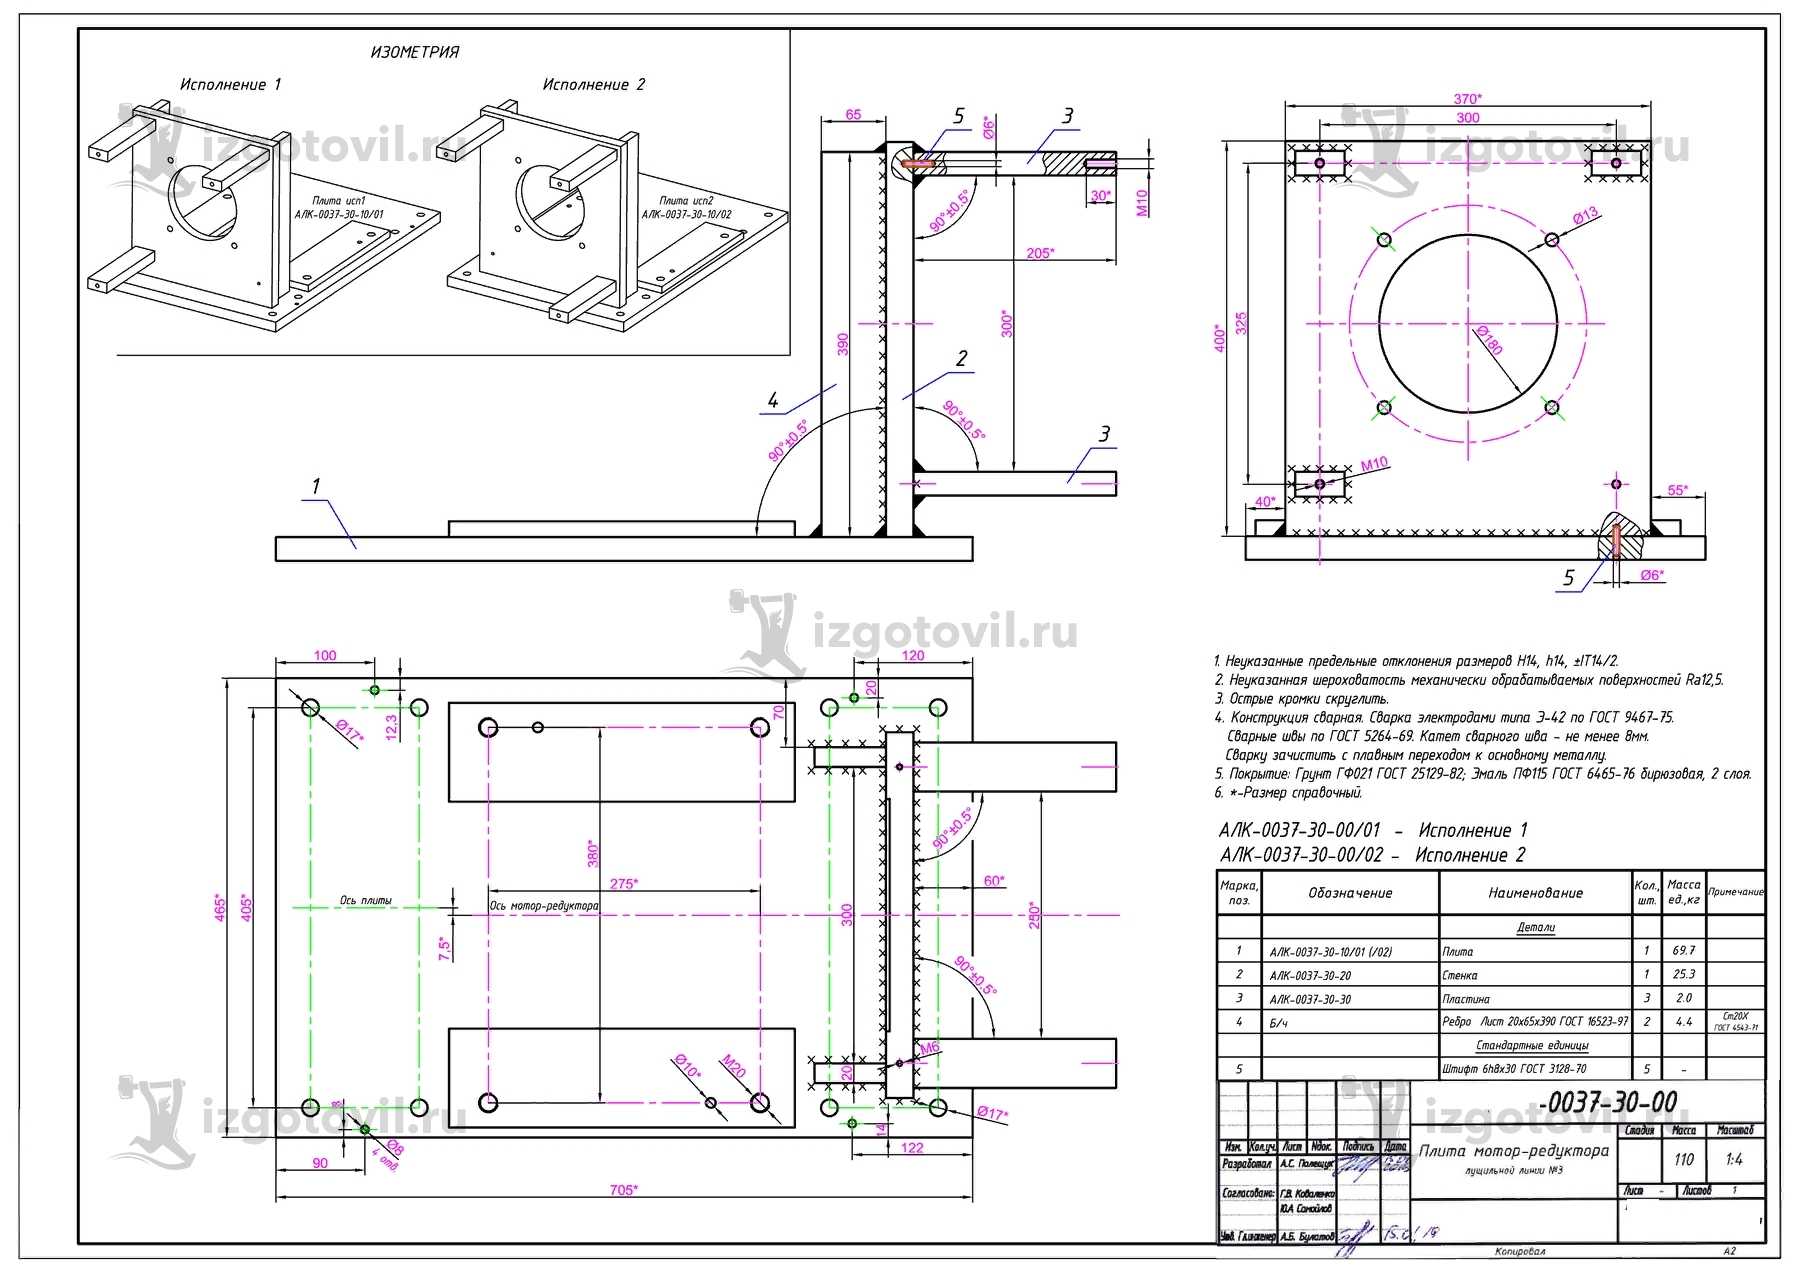 Изготовление деталей по чертежам (изготовление плиты мотор редуктора линии № 3 ).